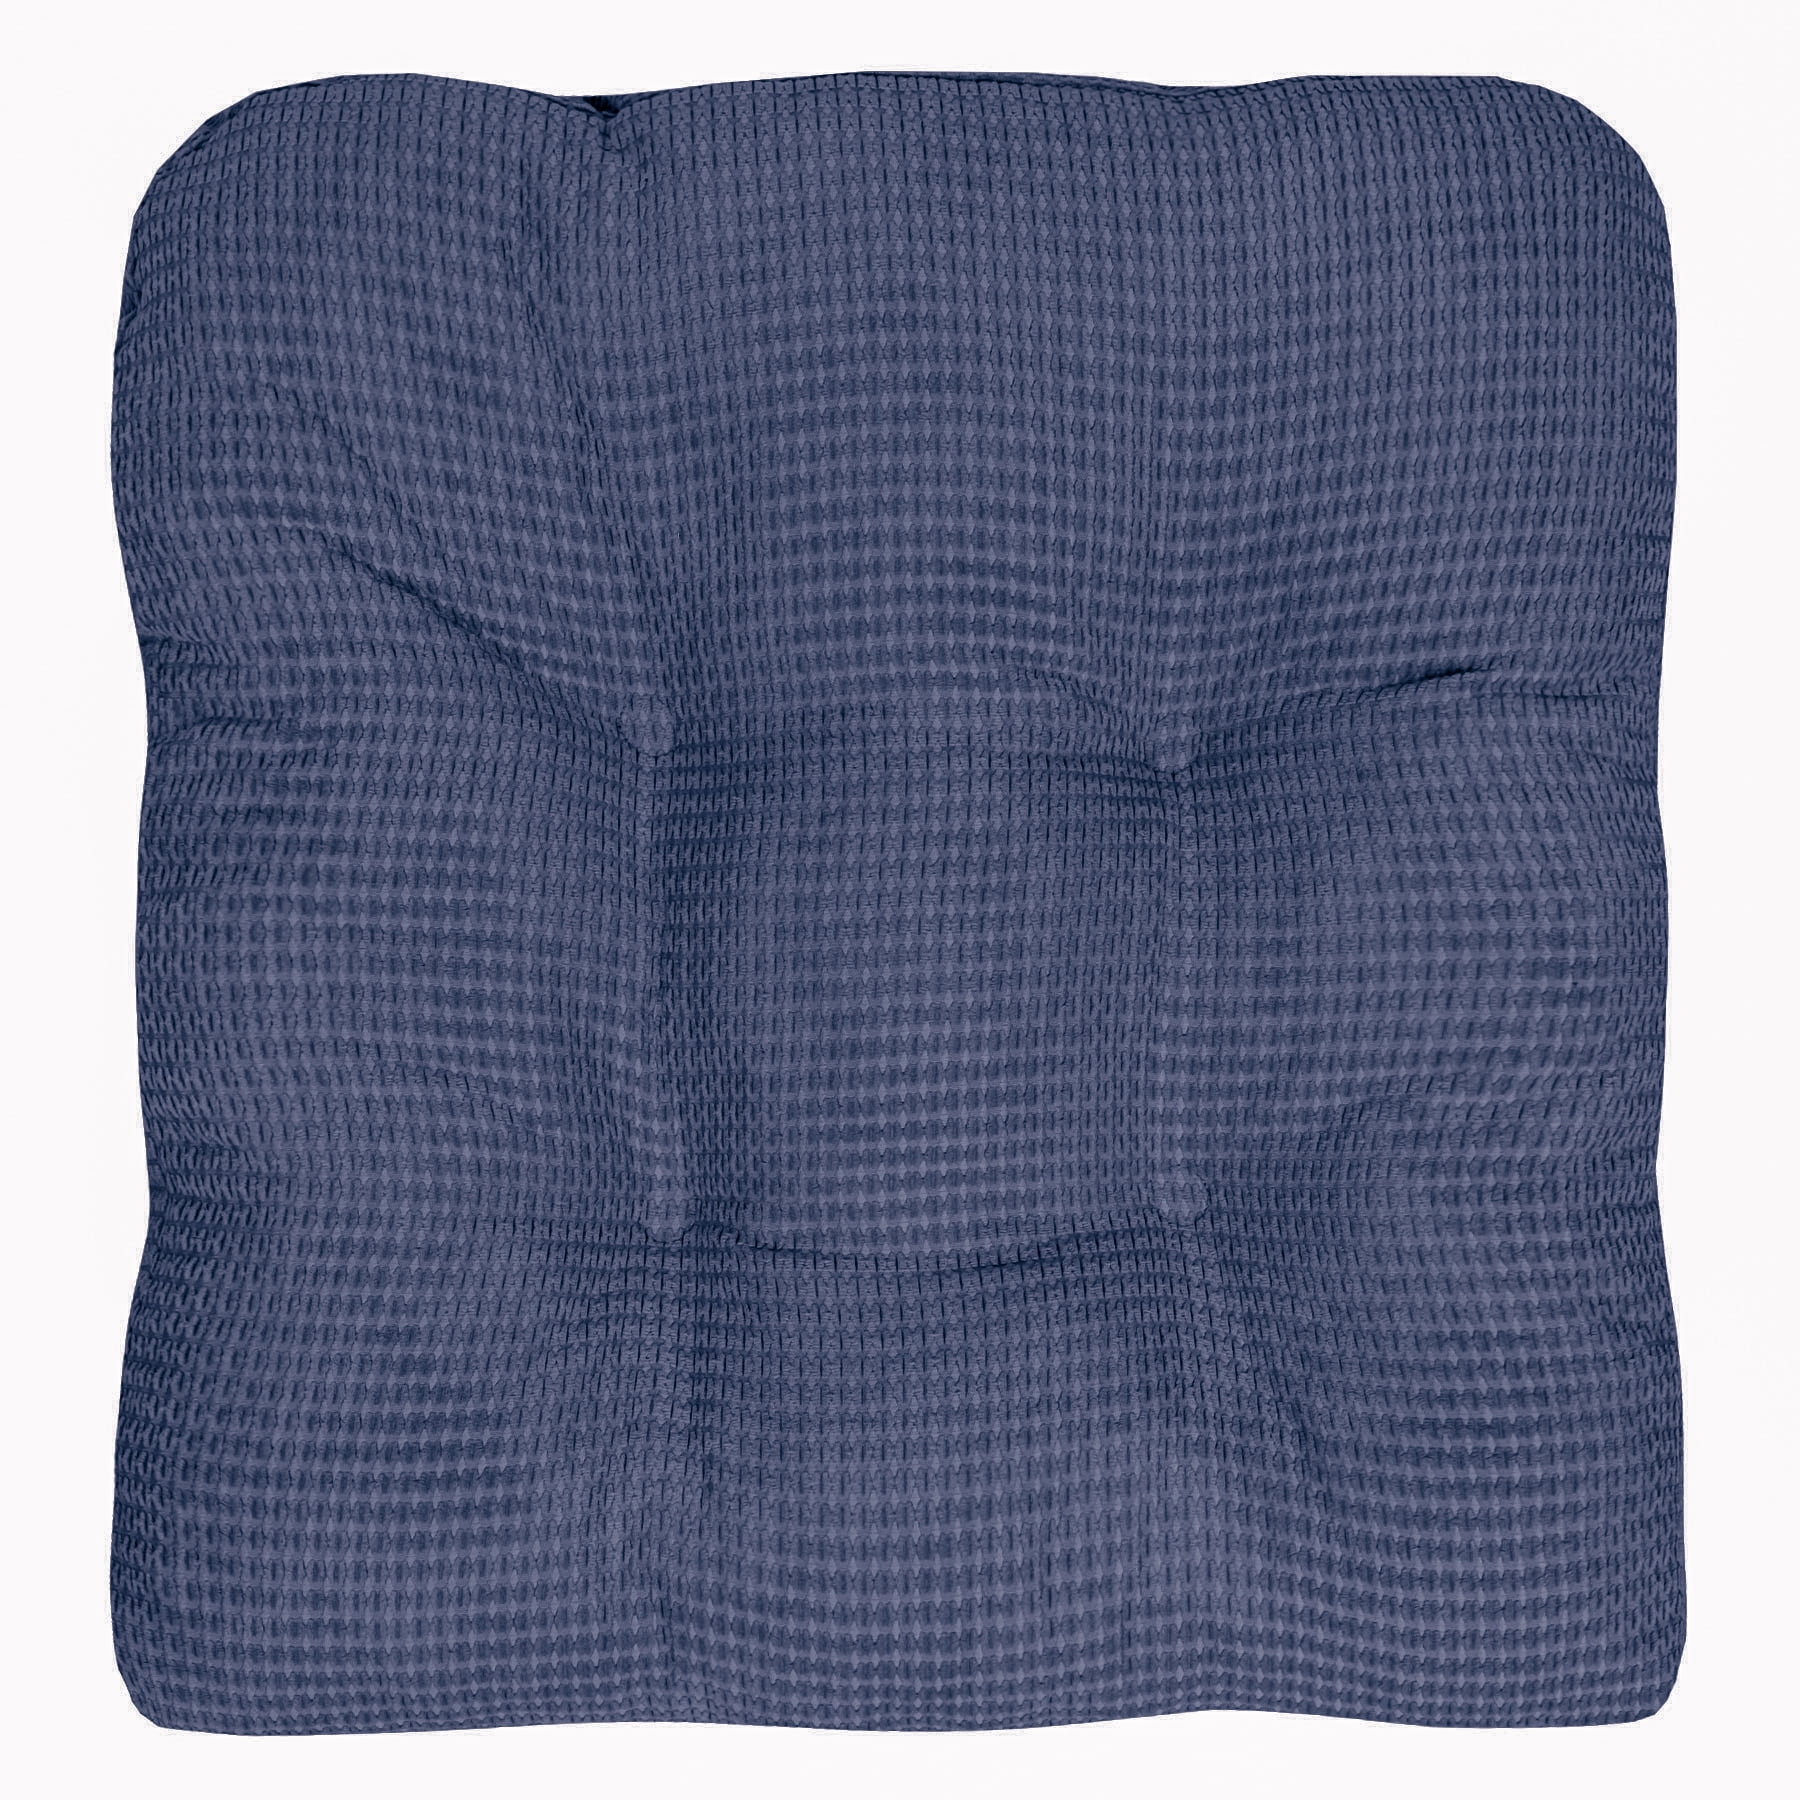 Fluffy Memory Foam Non Slip Chair Cushion Pad 6 Packs - Teal